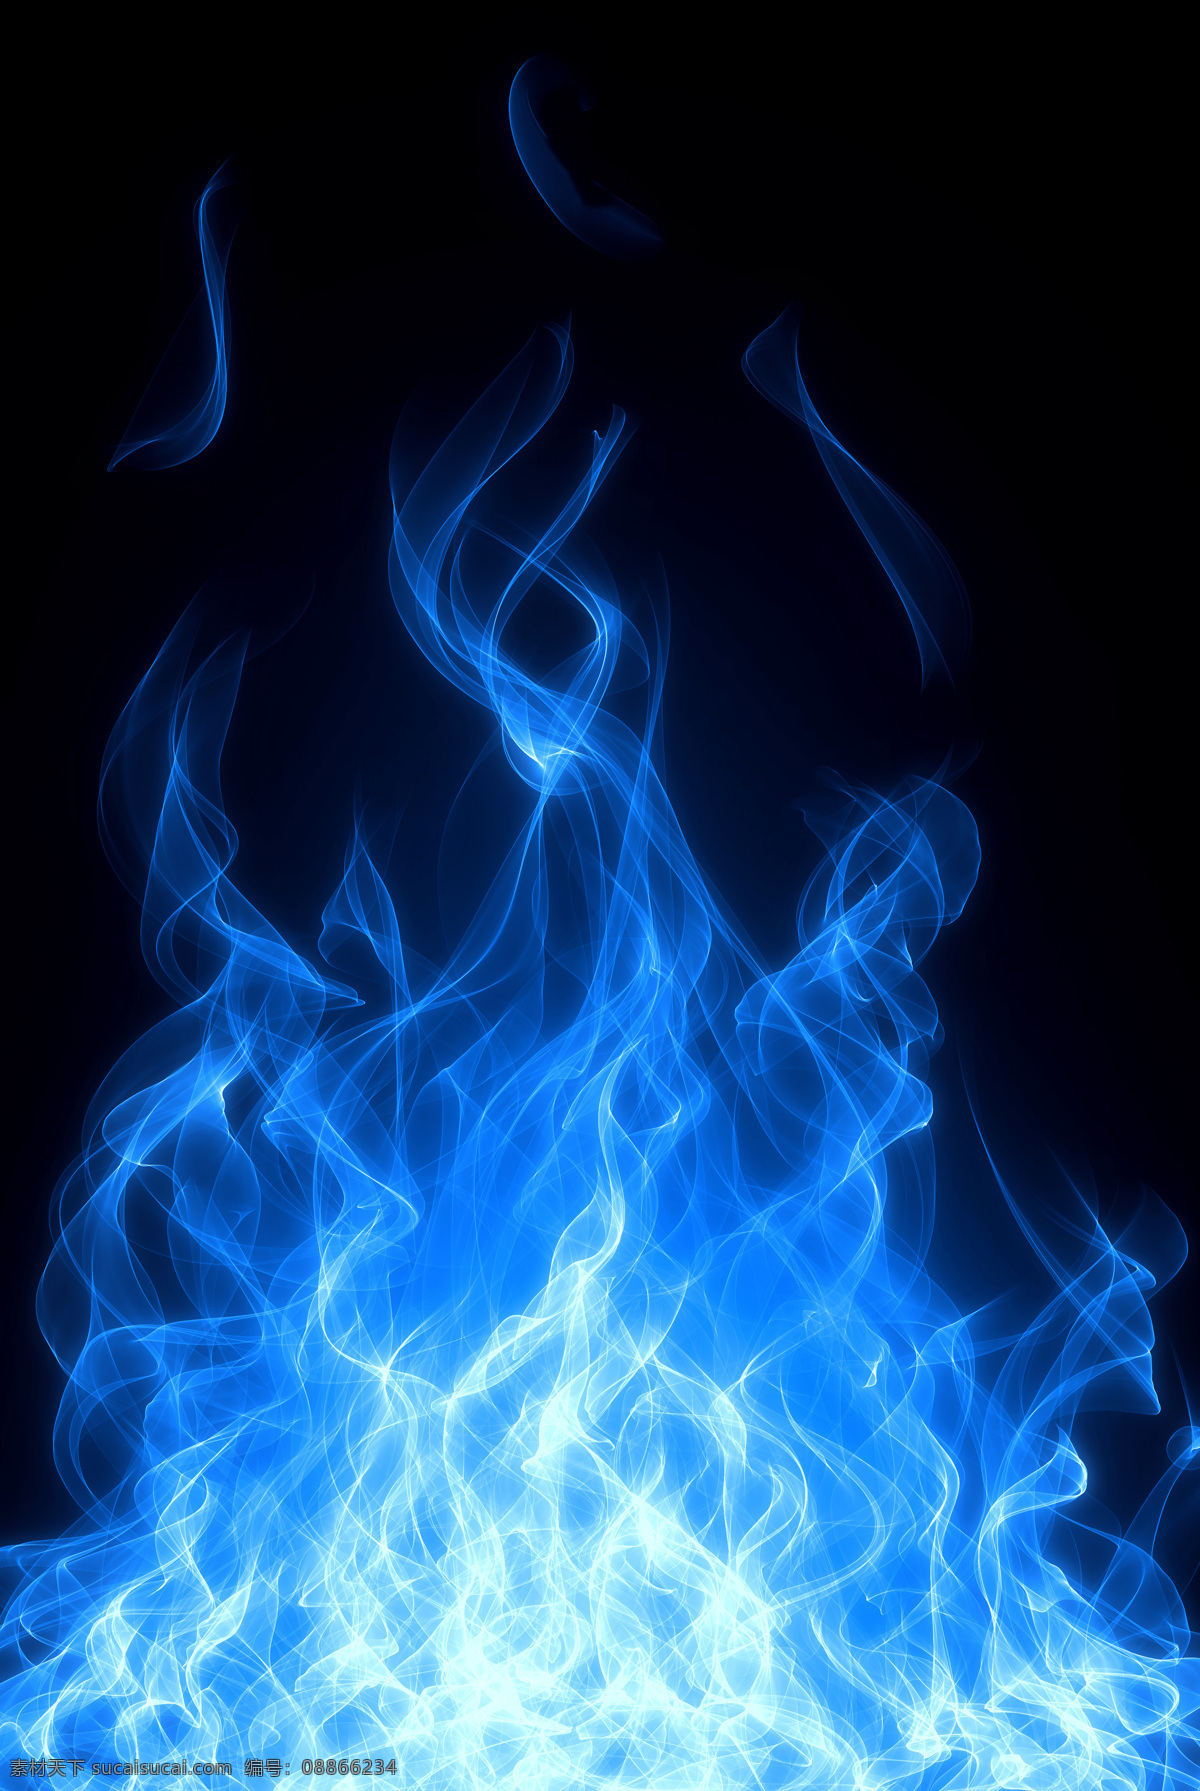 蓝色火焰 燃烧的火焰 火焰 燃烧 火焰背景 动感火焰 漂亮的火焰 跳动的火焰 火光 跳动 烈焰效果 跳跃 烈火 大火 火苗 背景底纹 动漫动画